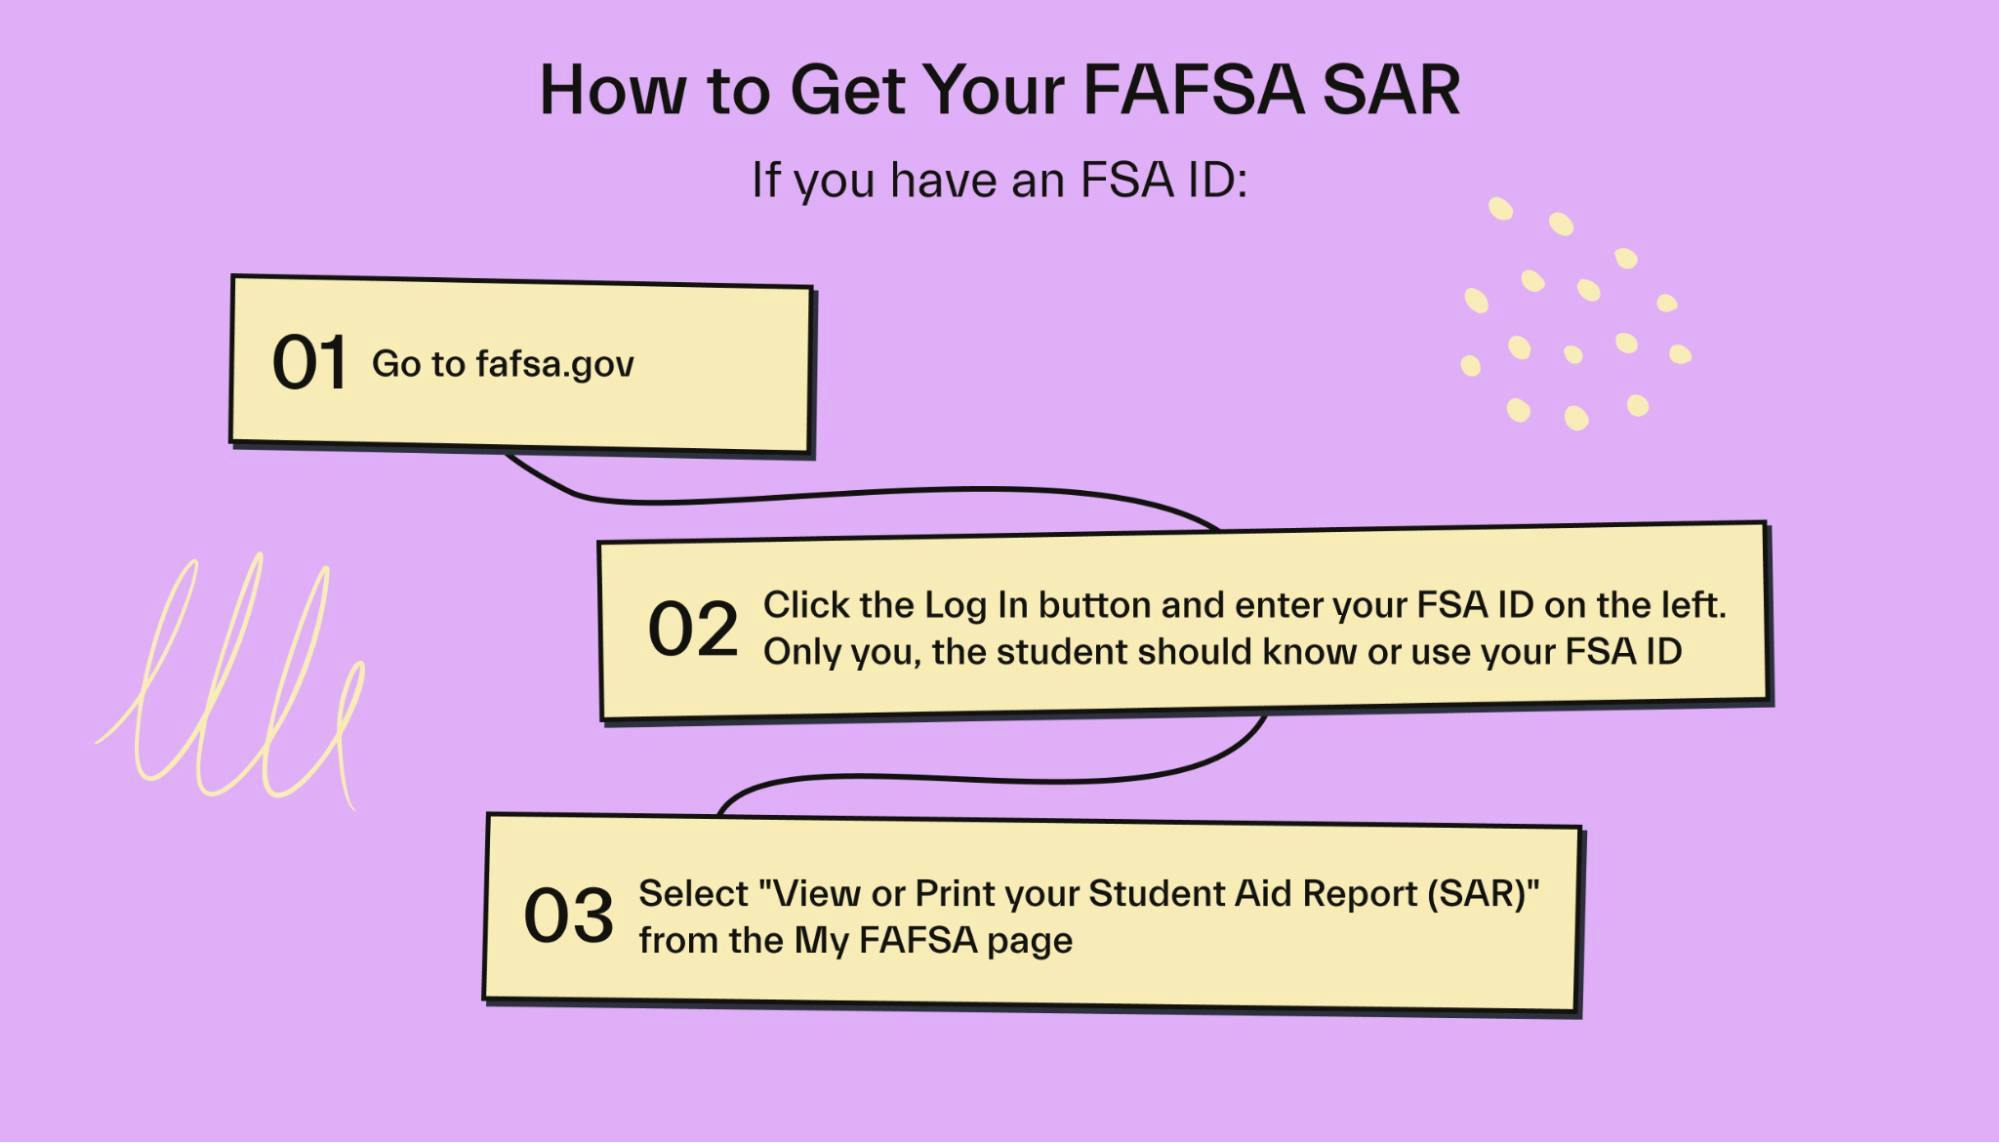 How to get your FAFSA SAR